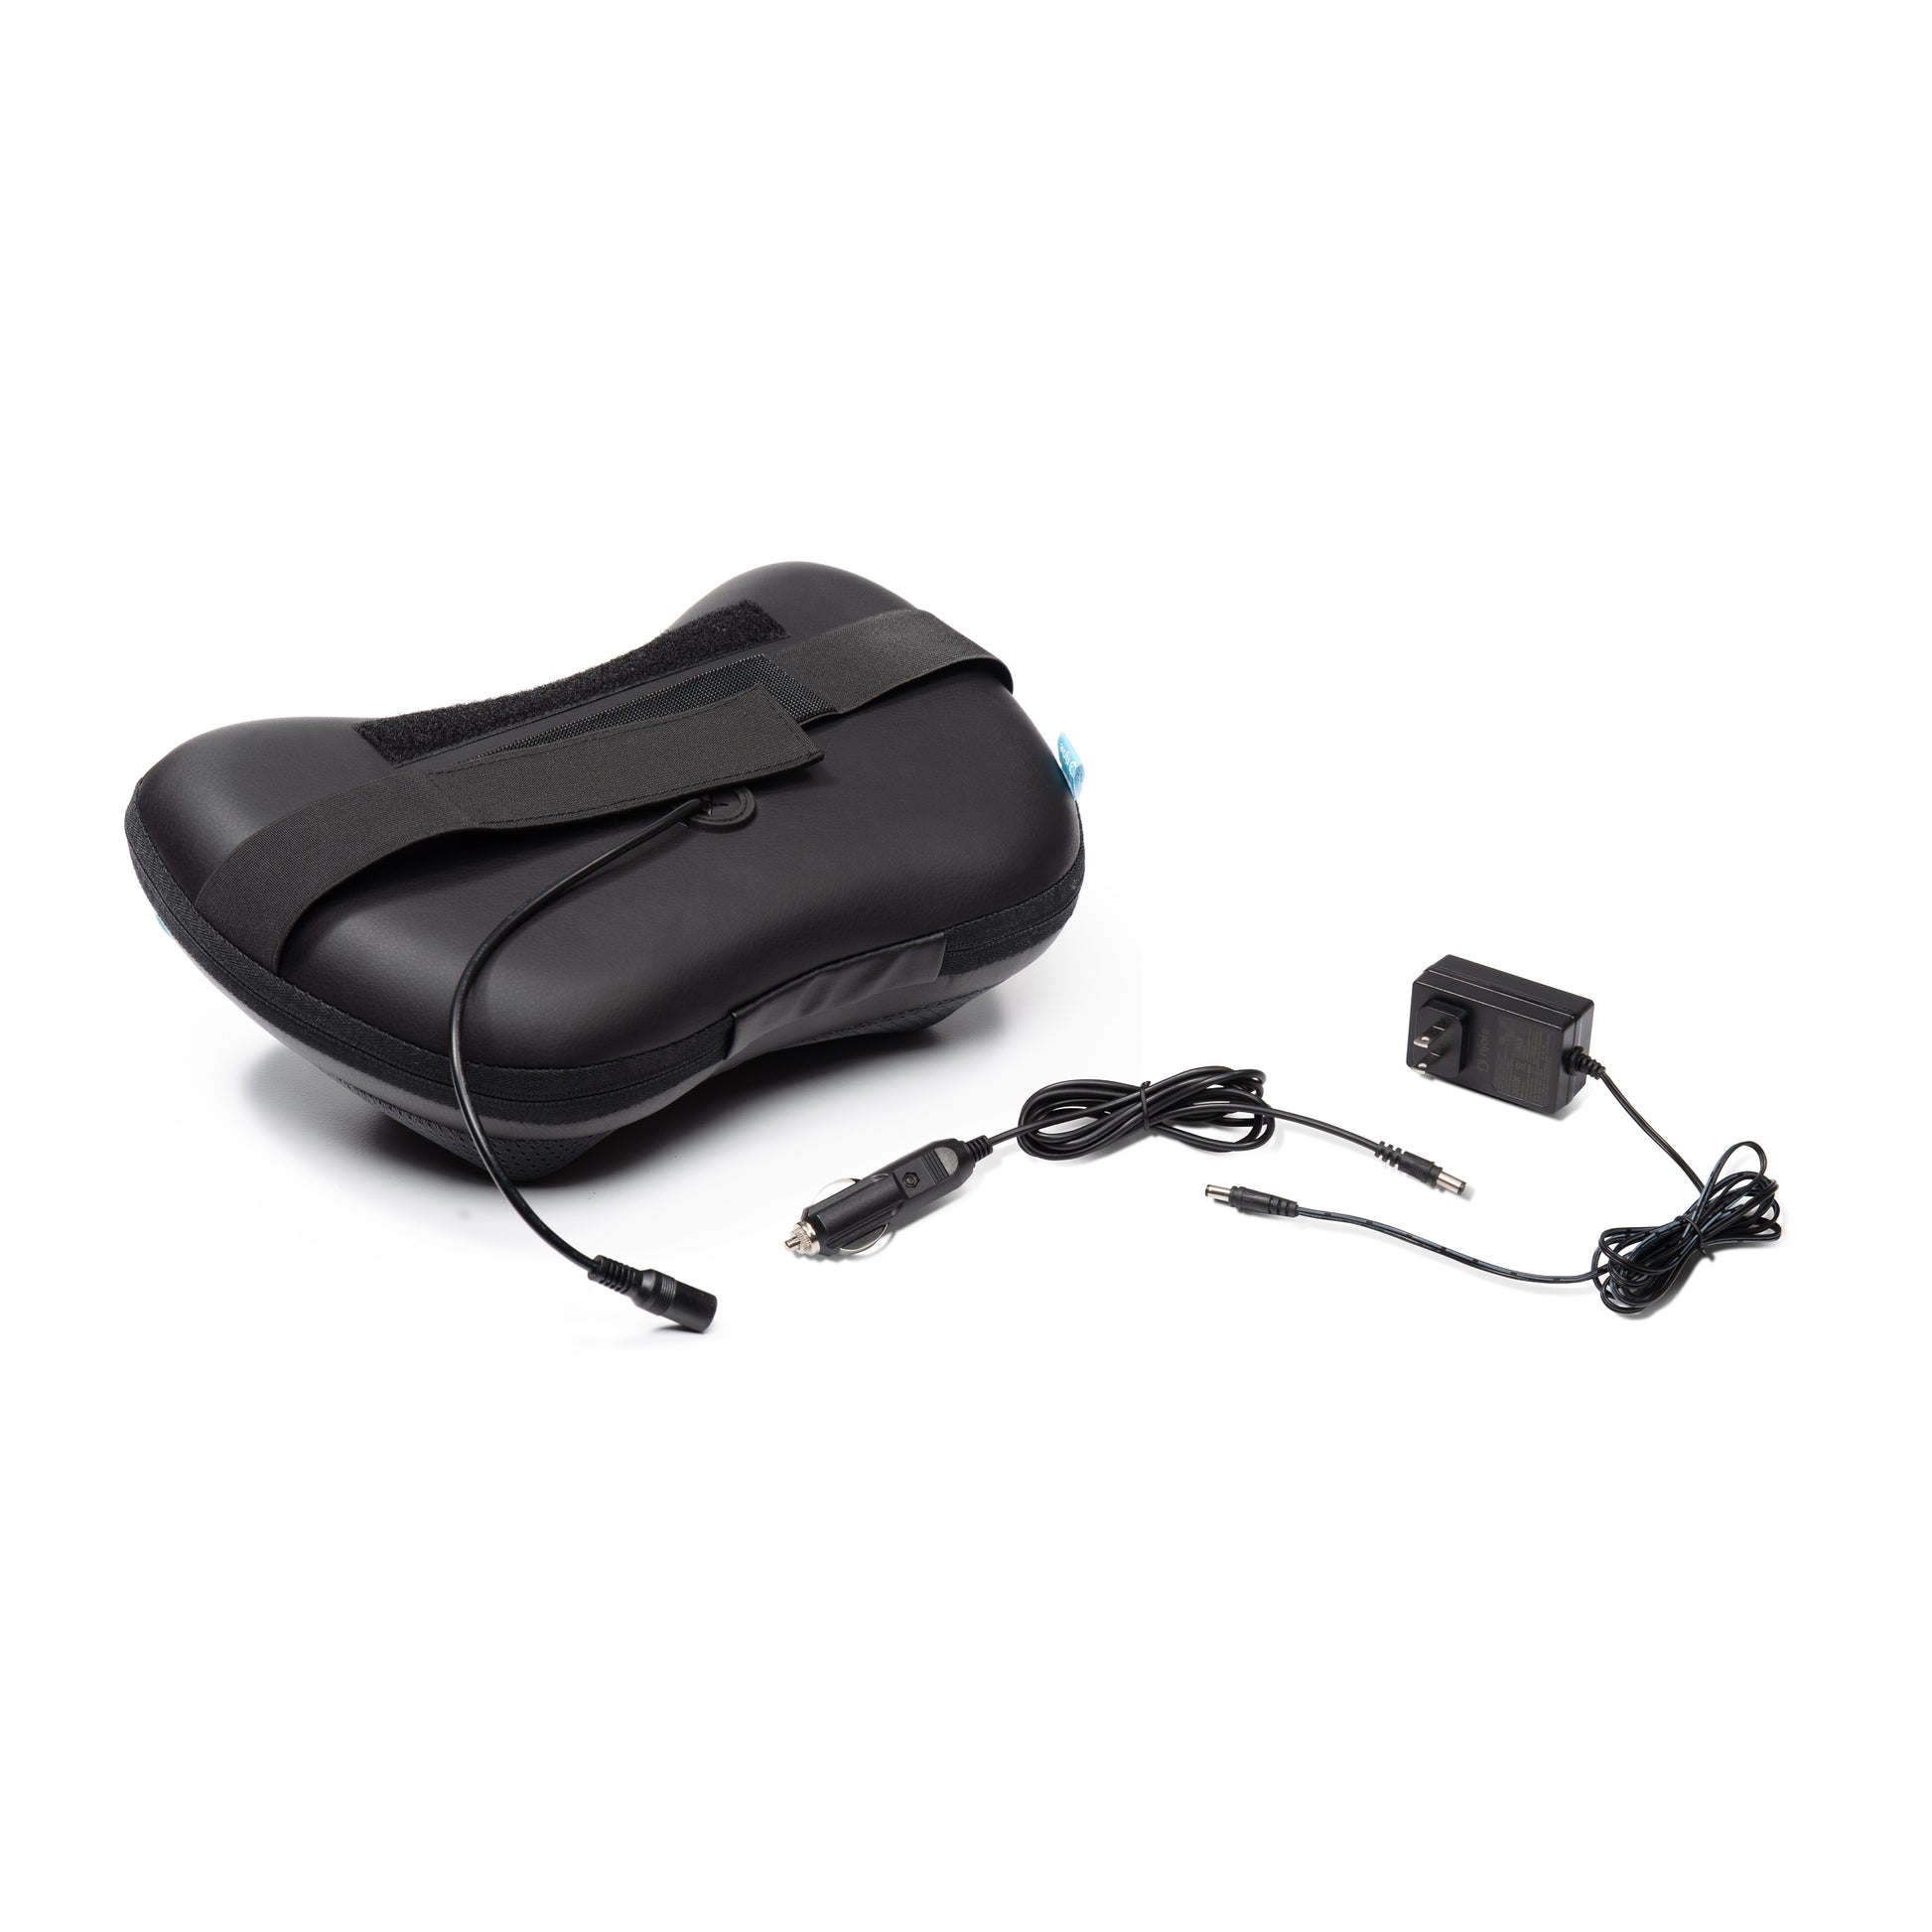 1byone Shiatsu Massage Pillow Massager with Heat Balls and Car Adapter,  Black